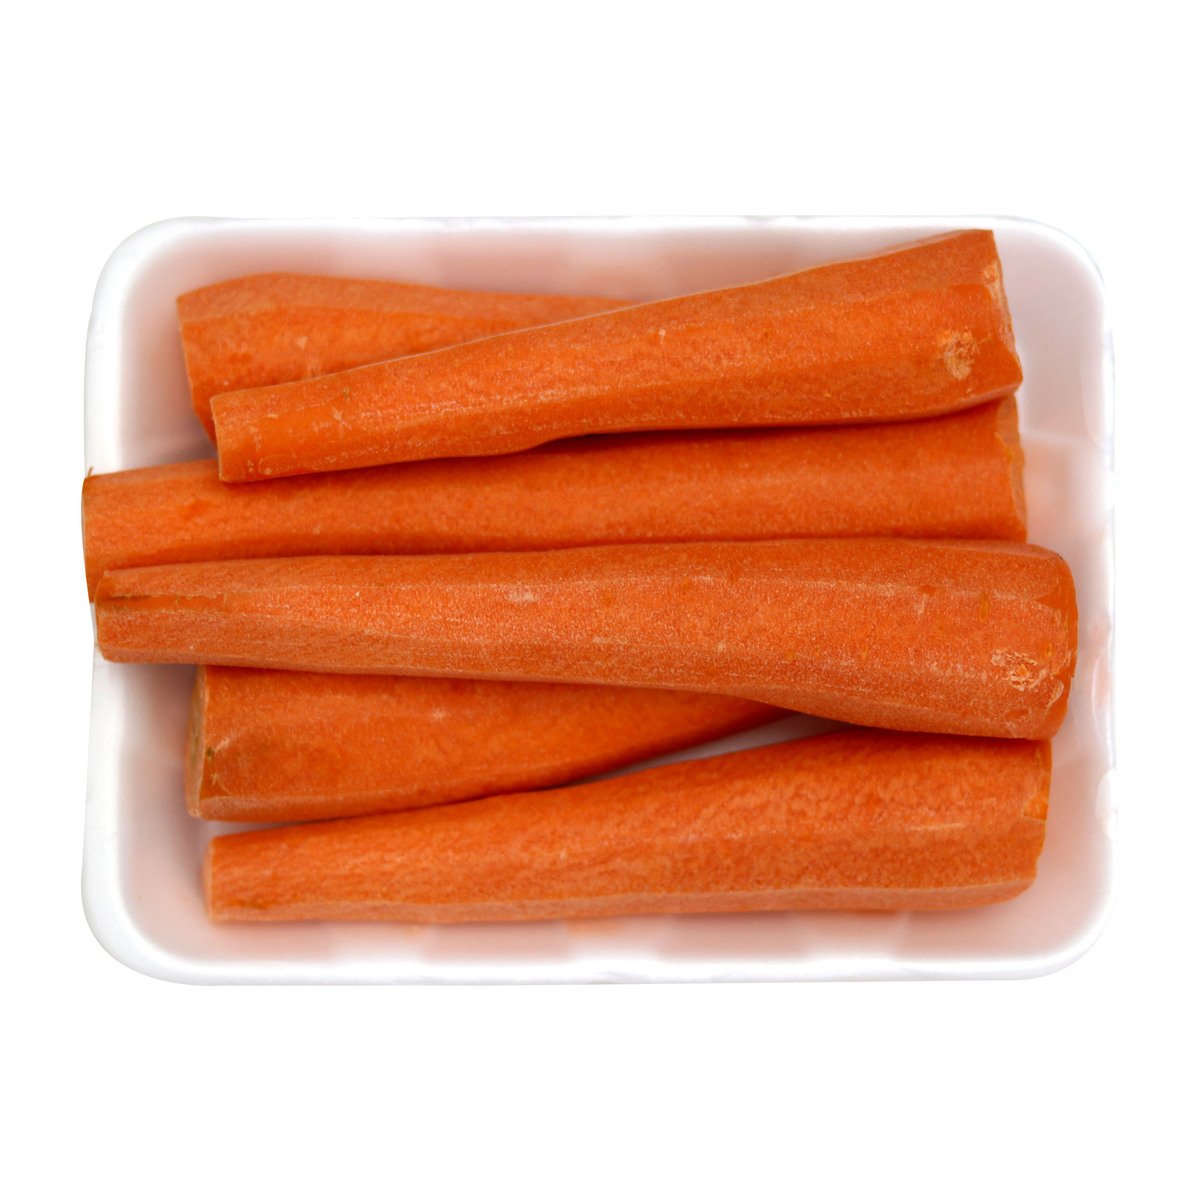 Carrot Sliced 1pkt